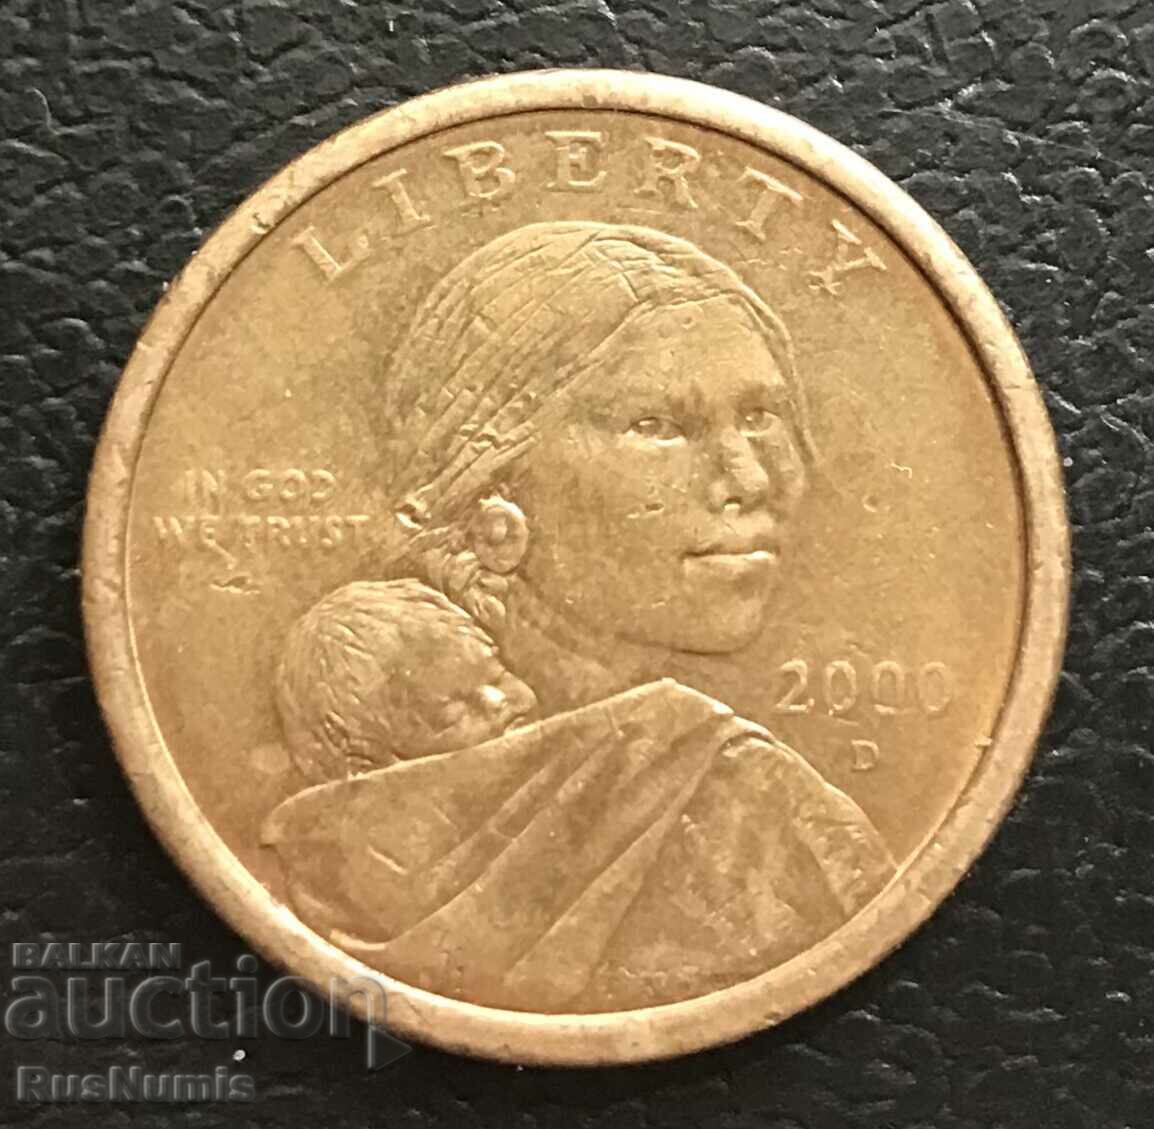 USA. $ 1, 2000 (D).